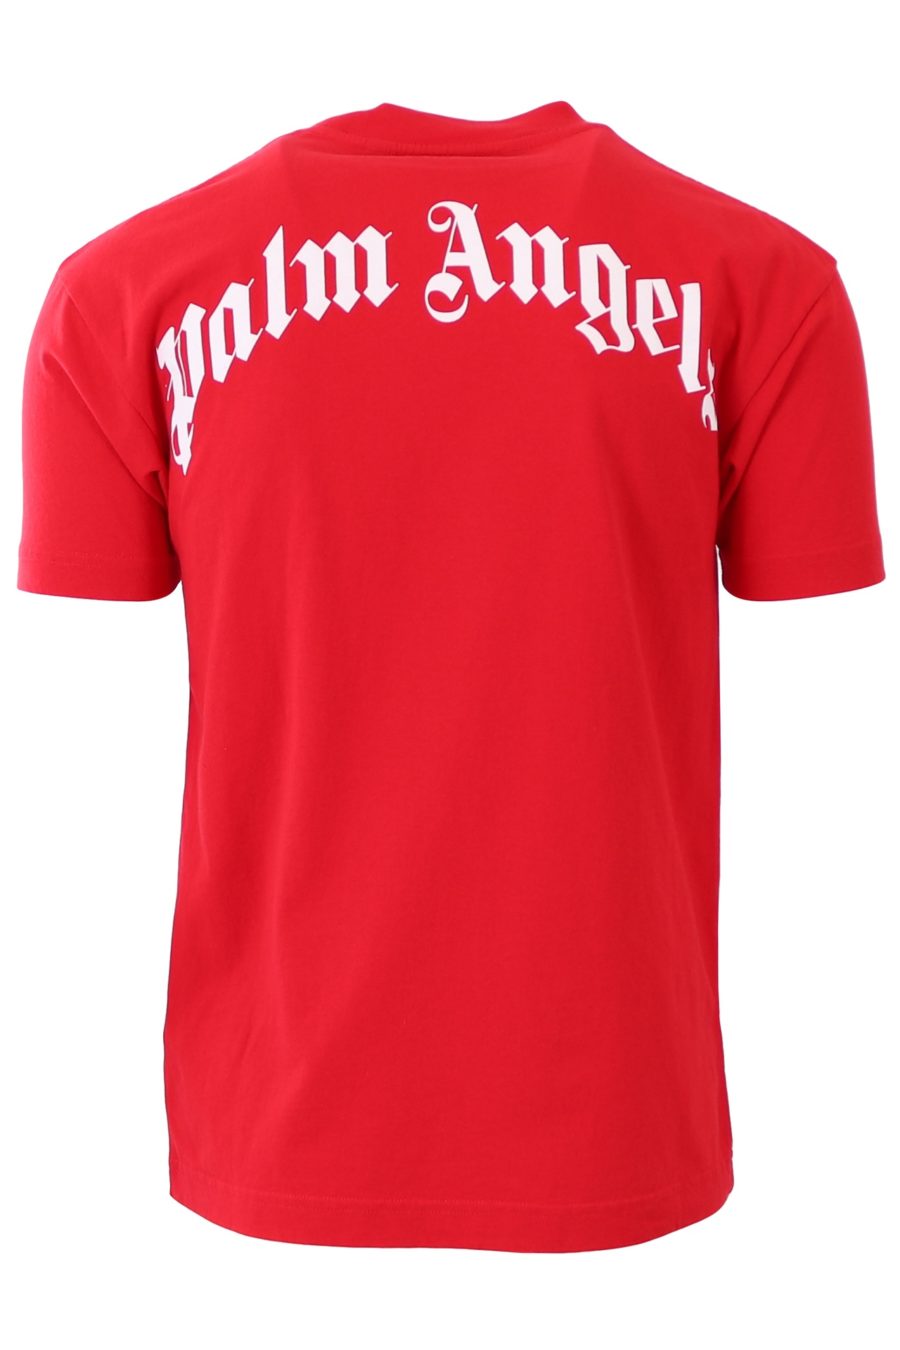 T-shirt Palm Angels vermelha com urso - 32e223a3748e678725c4a8c812146d994f138f03